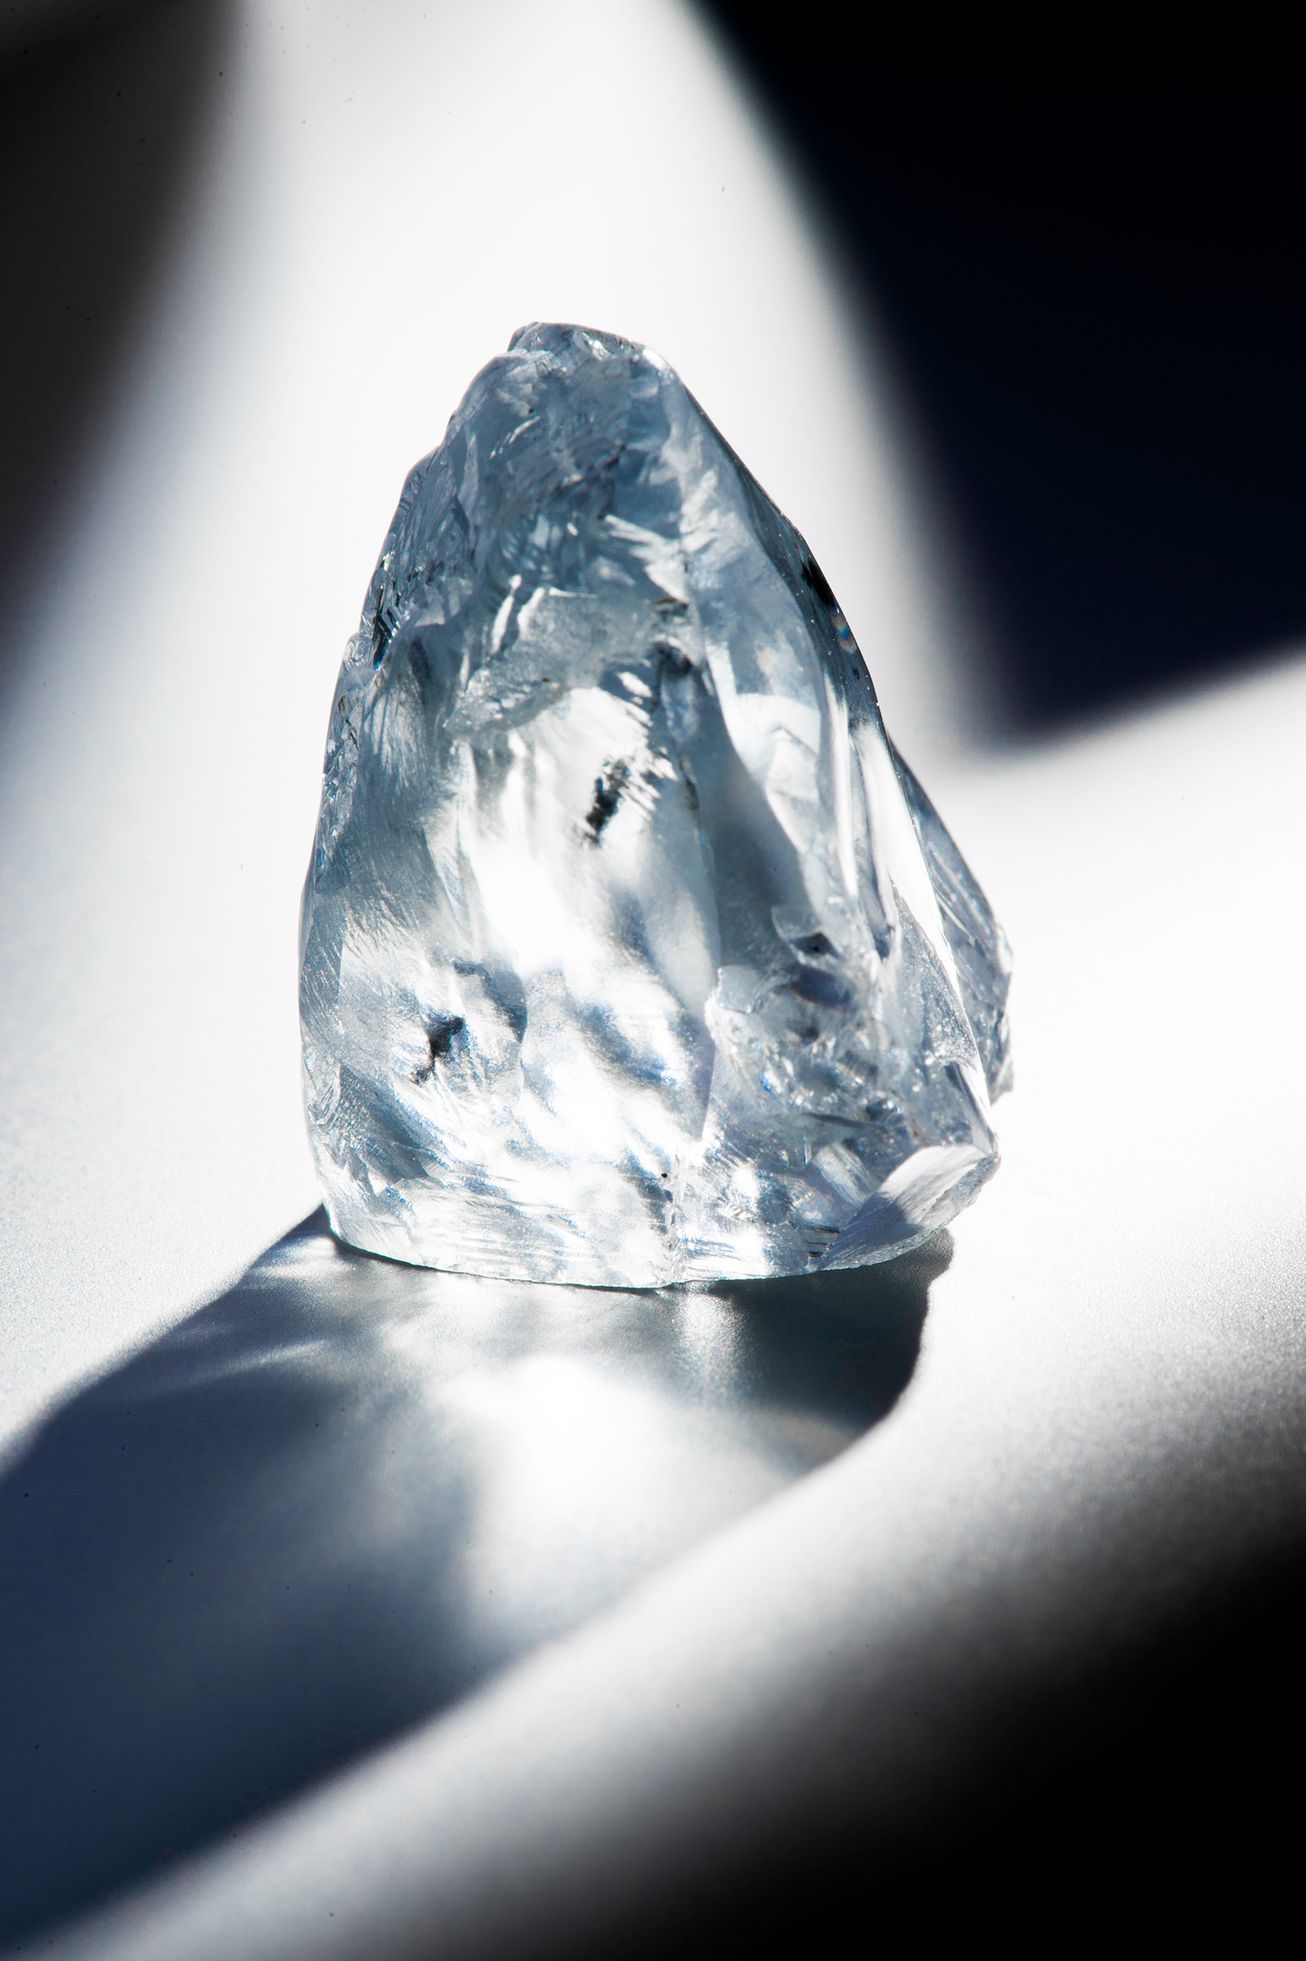 Společnost Petra Diamonds vytěžila další vzácný kámen